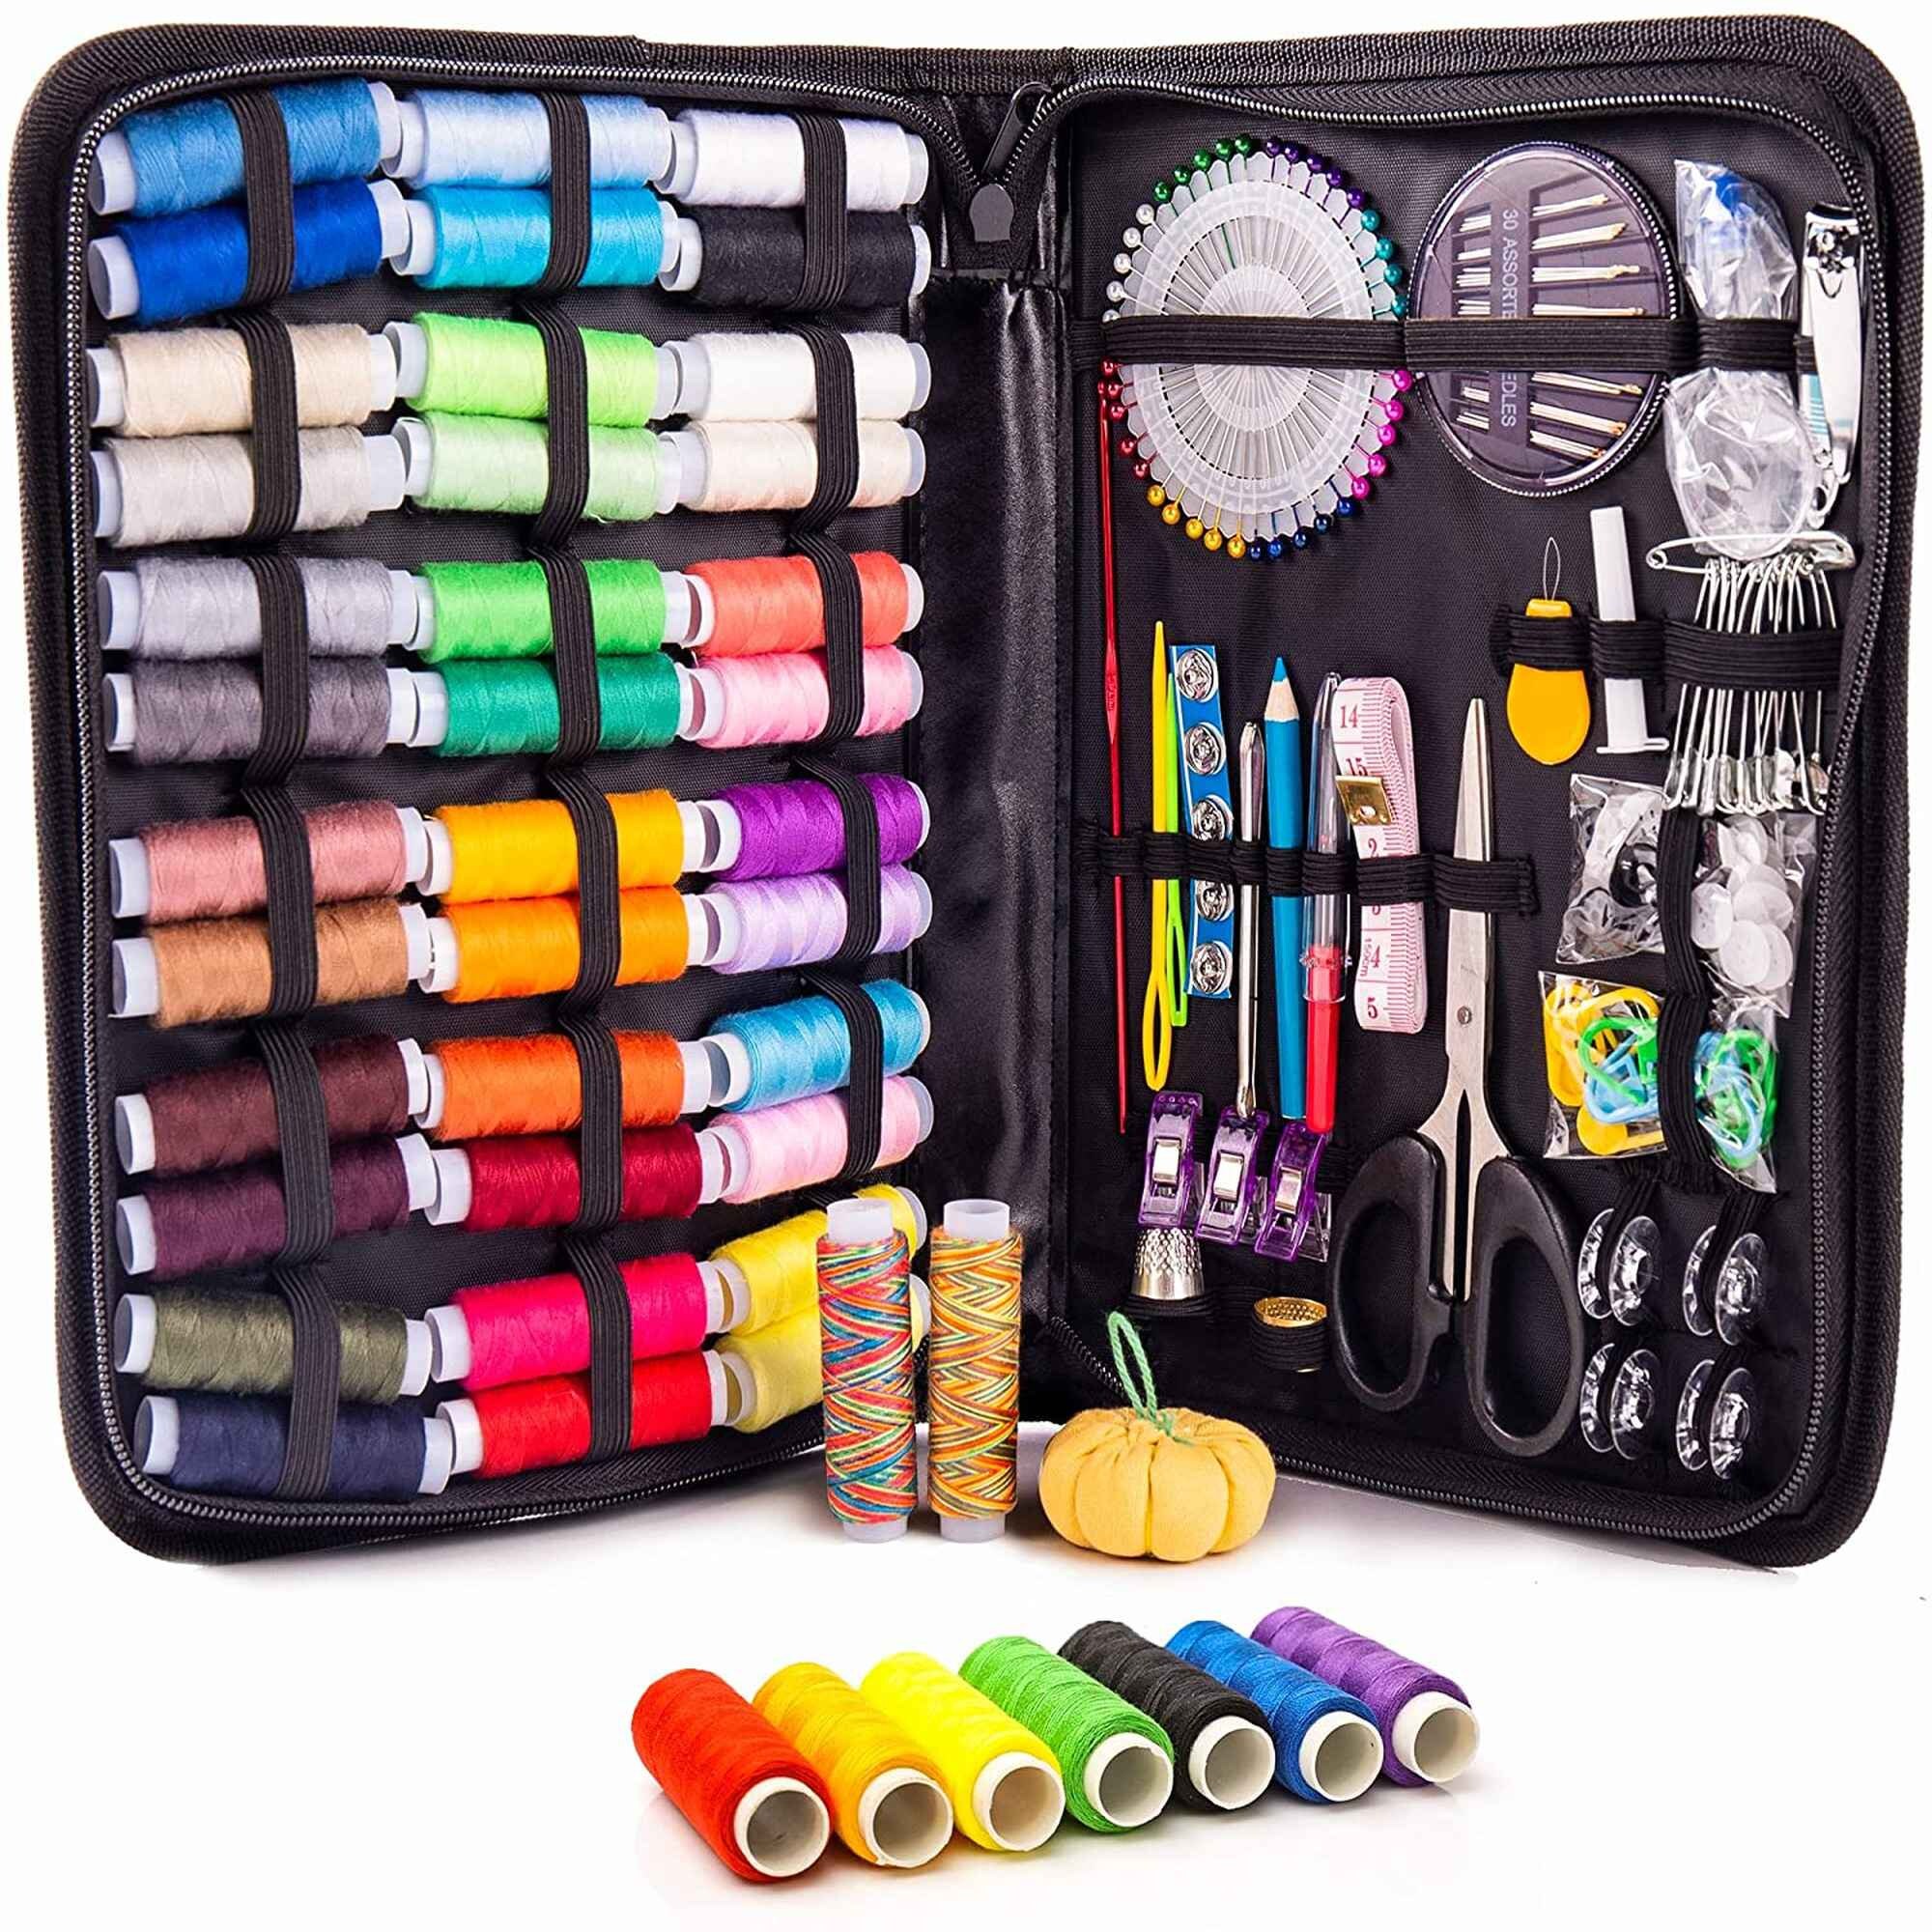 Mini Sewing Kit, Travel Sewing Kit, Mending Kit, Sewing Notions